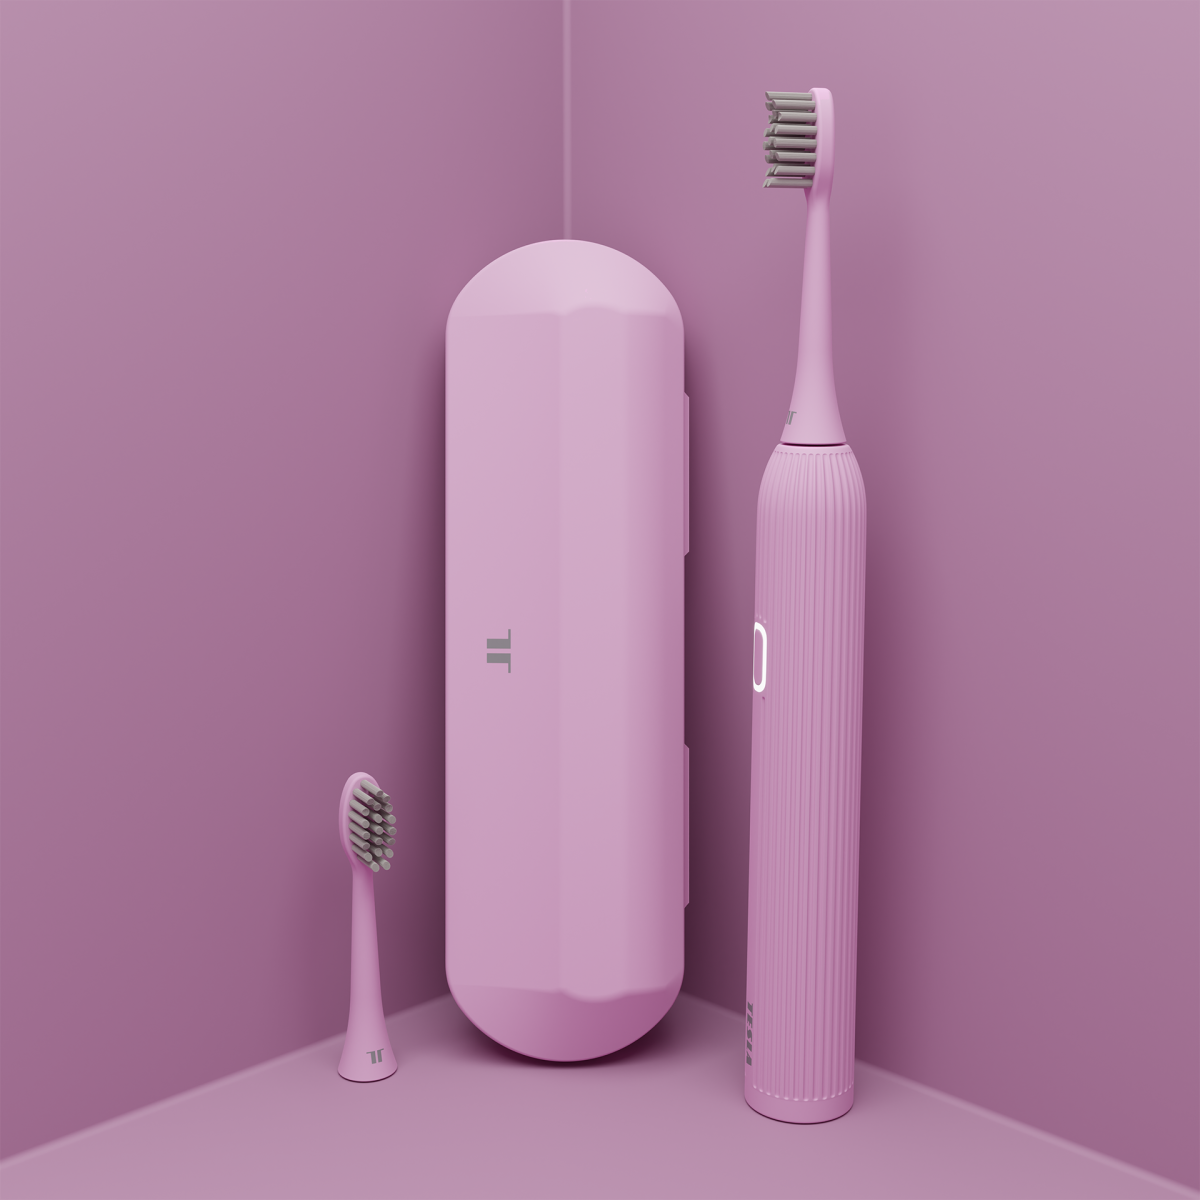 TESLA-Smart-toothbrush-Sonic-TS200-lf-pink-1920x1920-01